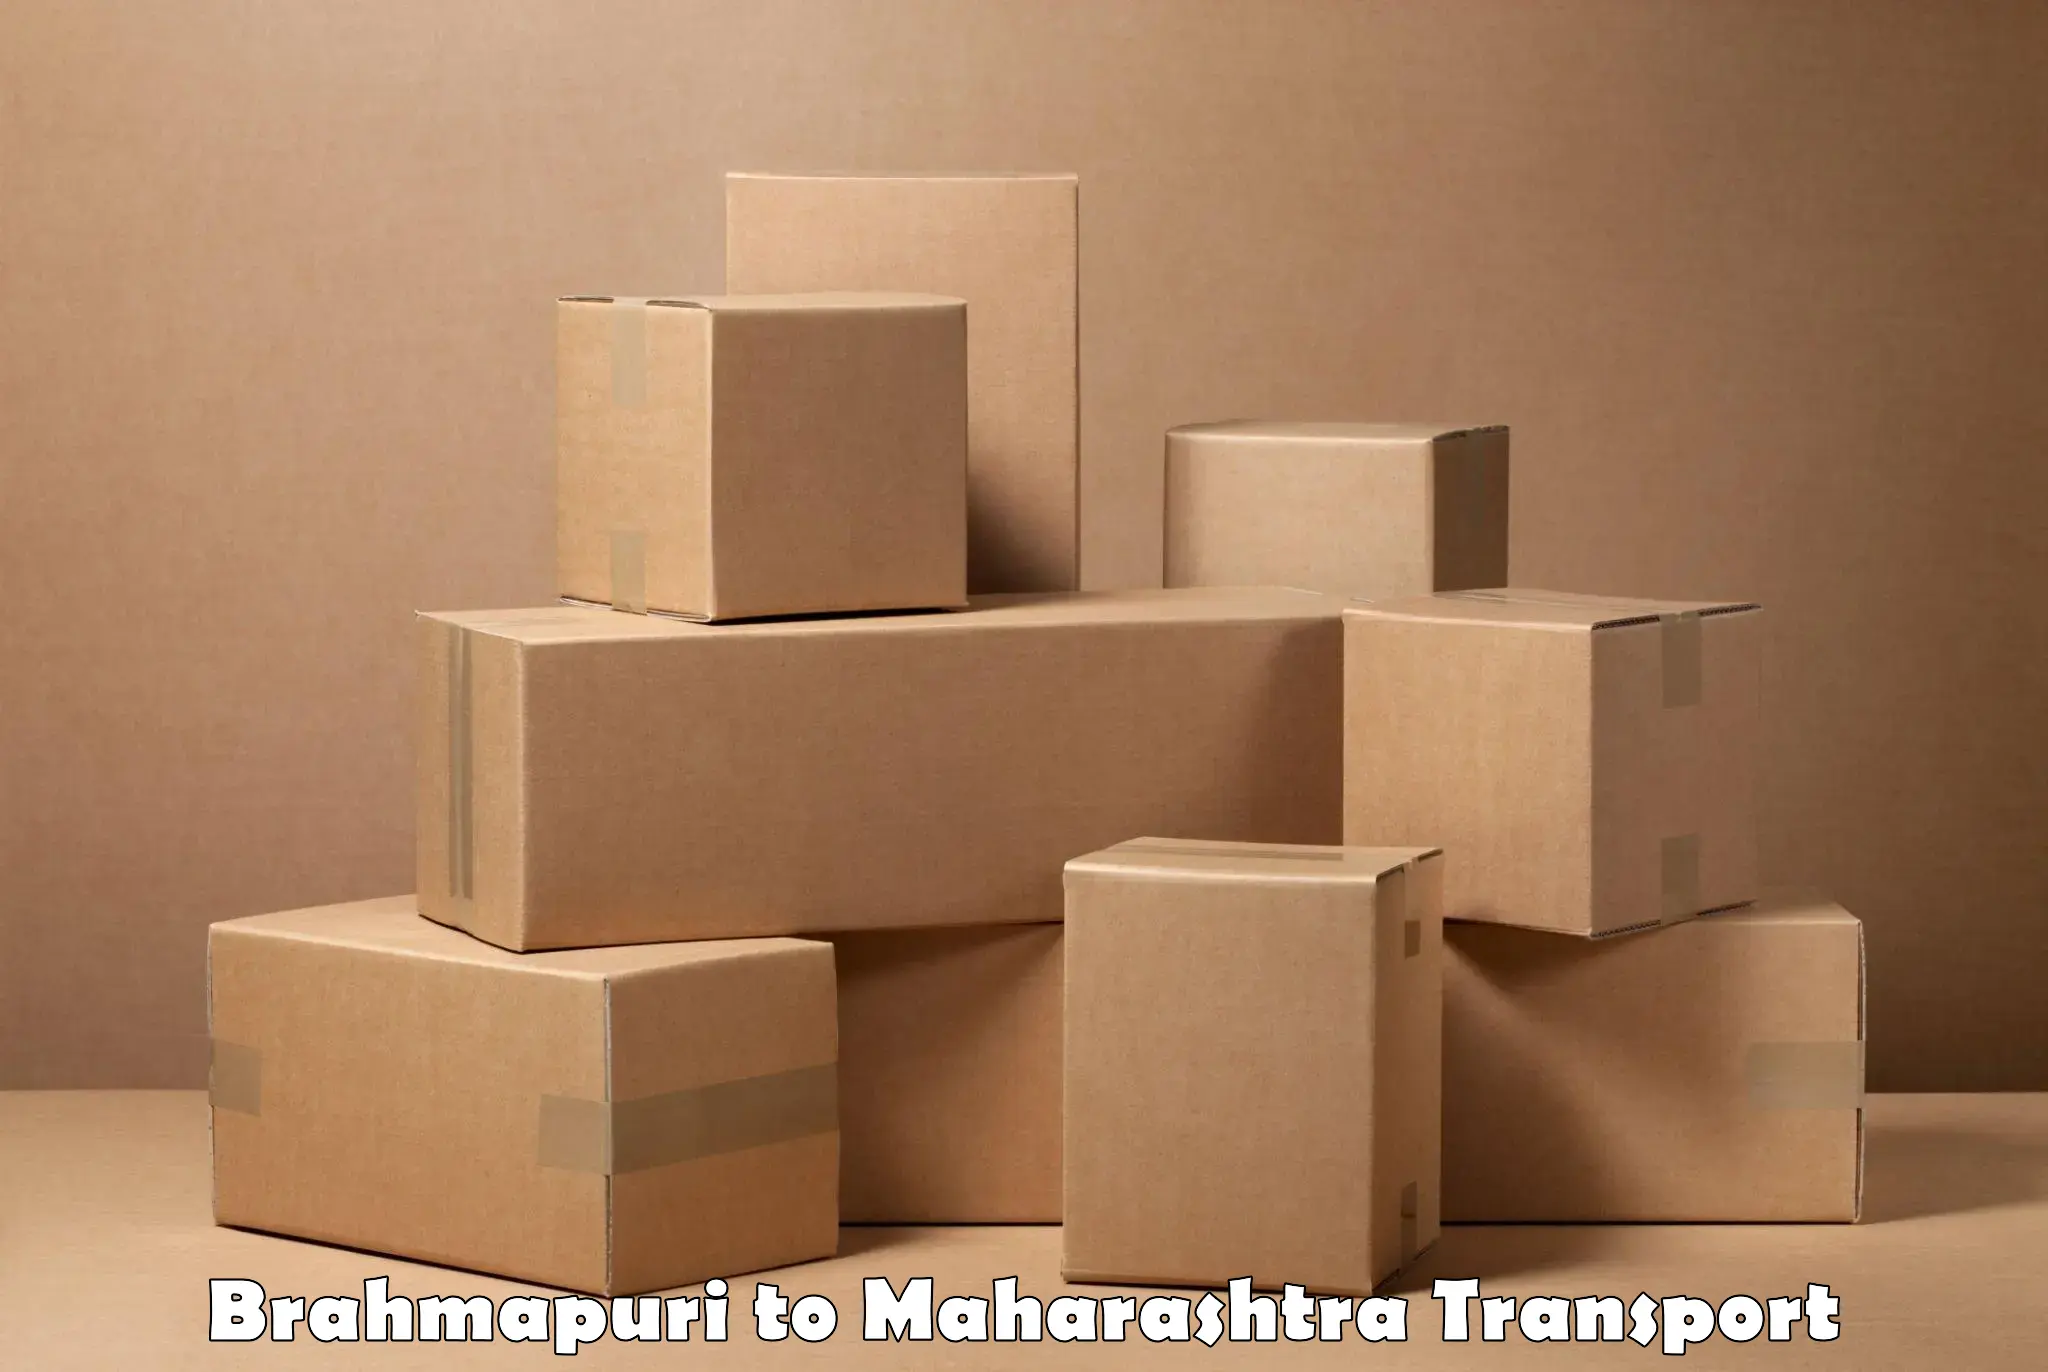 Daily transport service Brahmapuri to Vasai